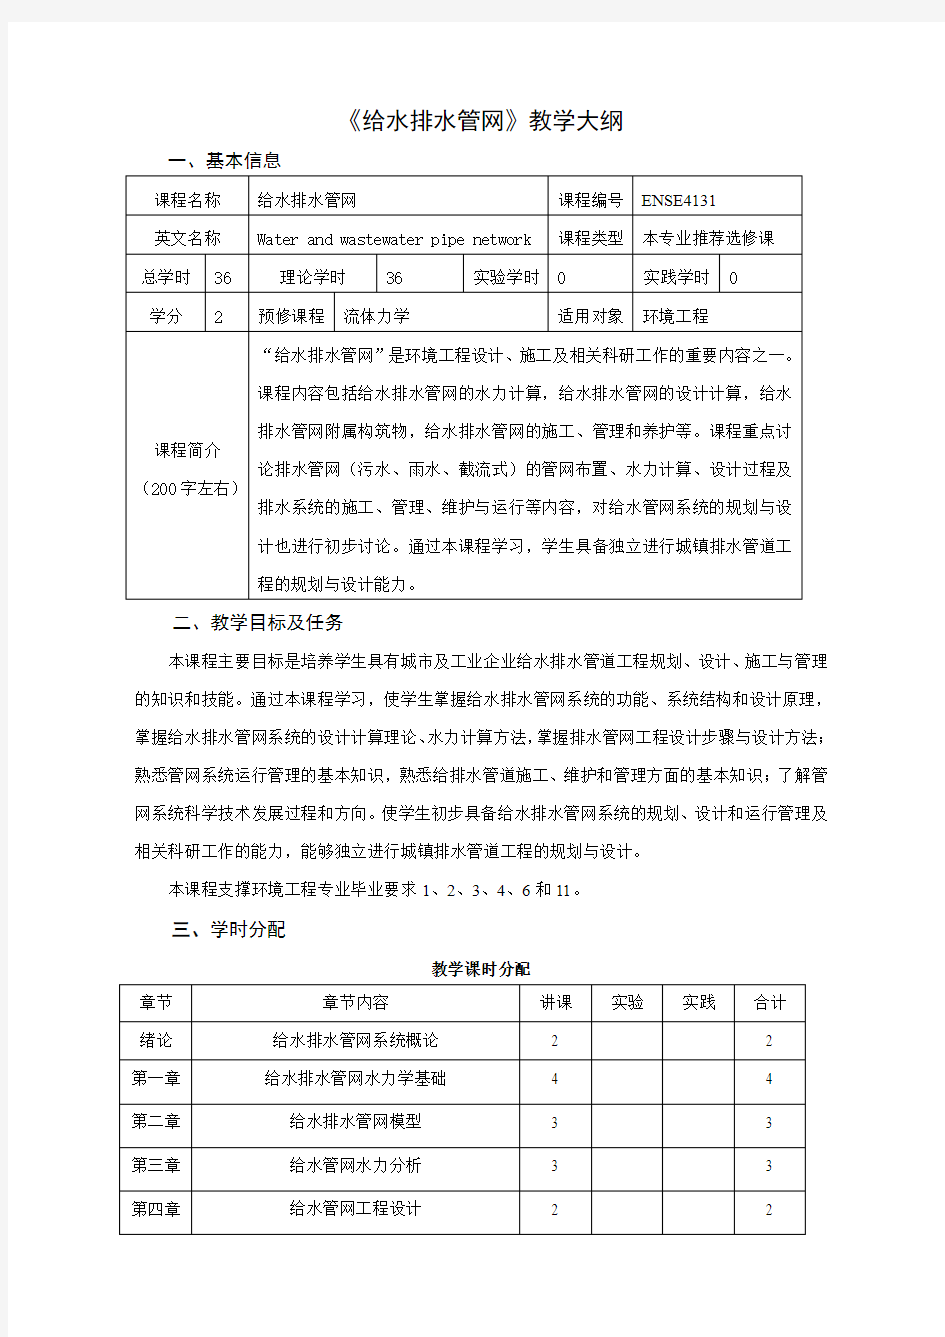 南京农业大学课程教学大纲格式与要求-南京农业大学资源与环境科学